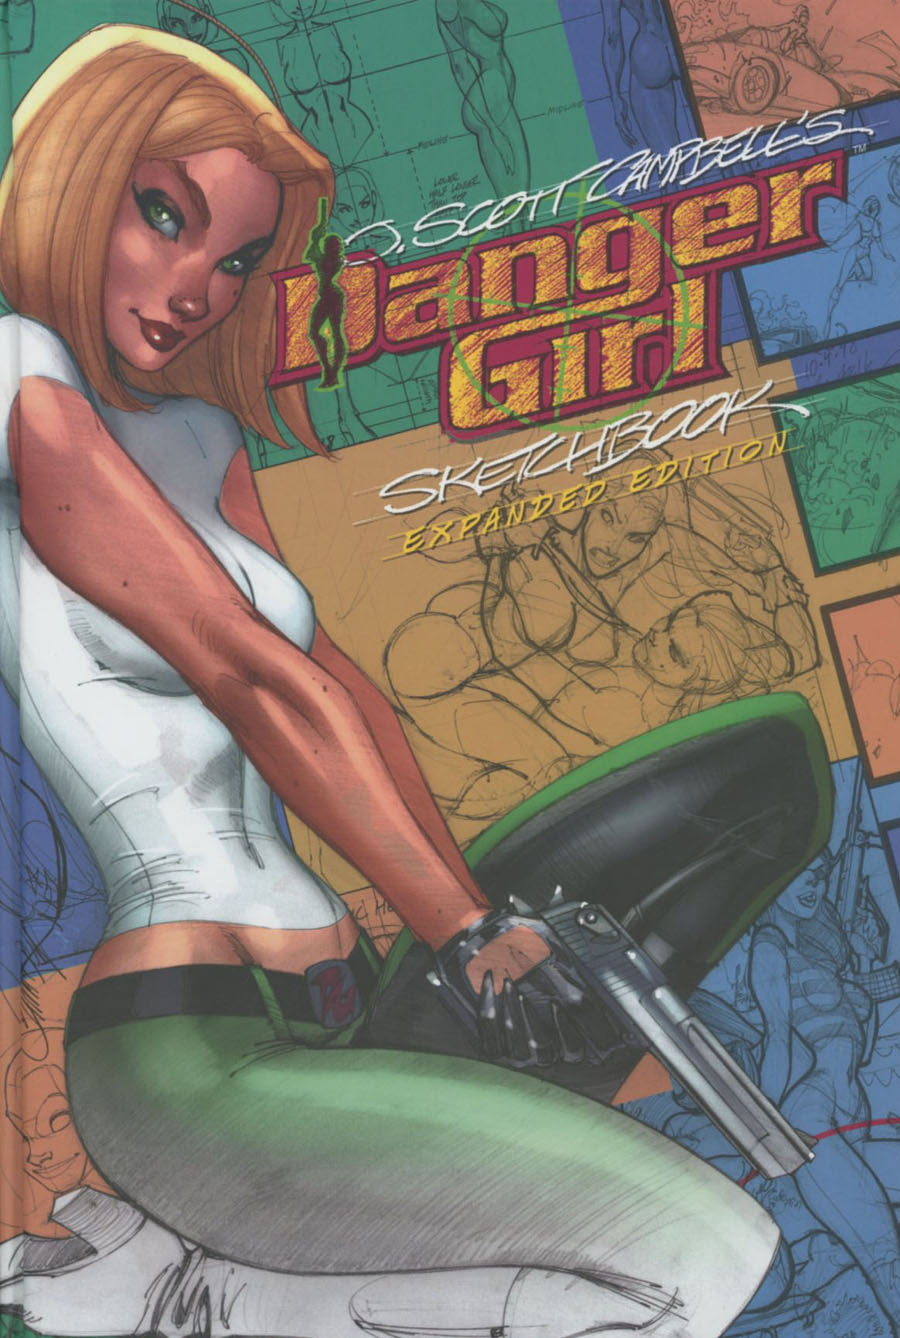 J Scott Campbells Danger Girl Sketchbook Expanded Edition HC